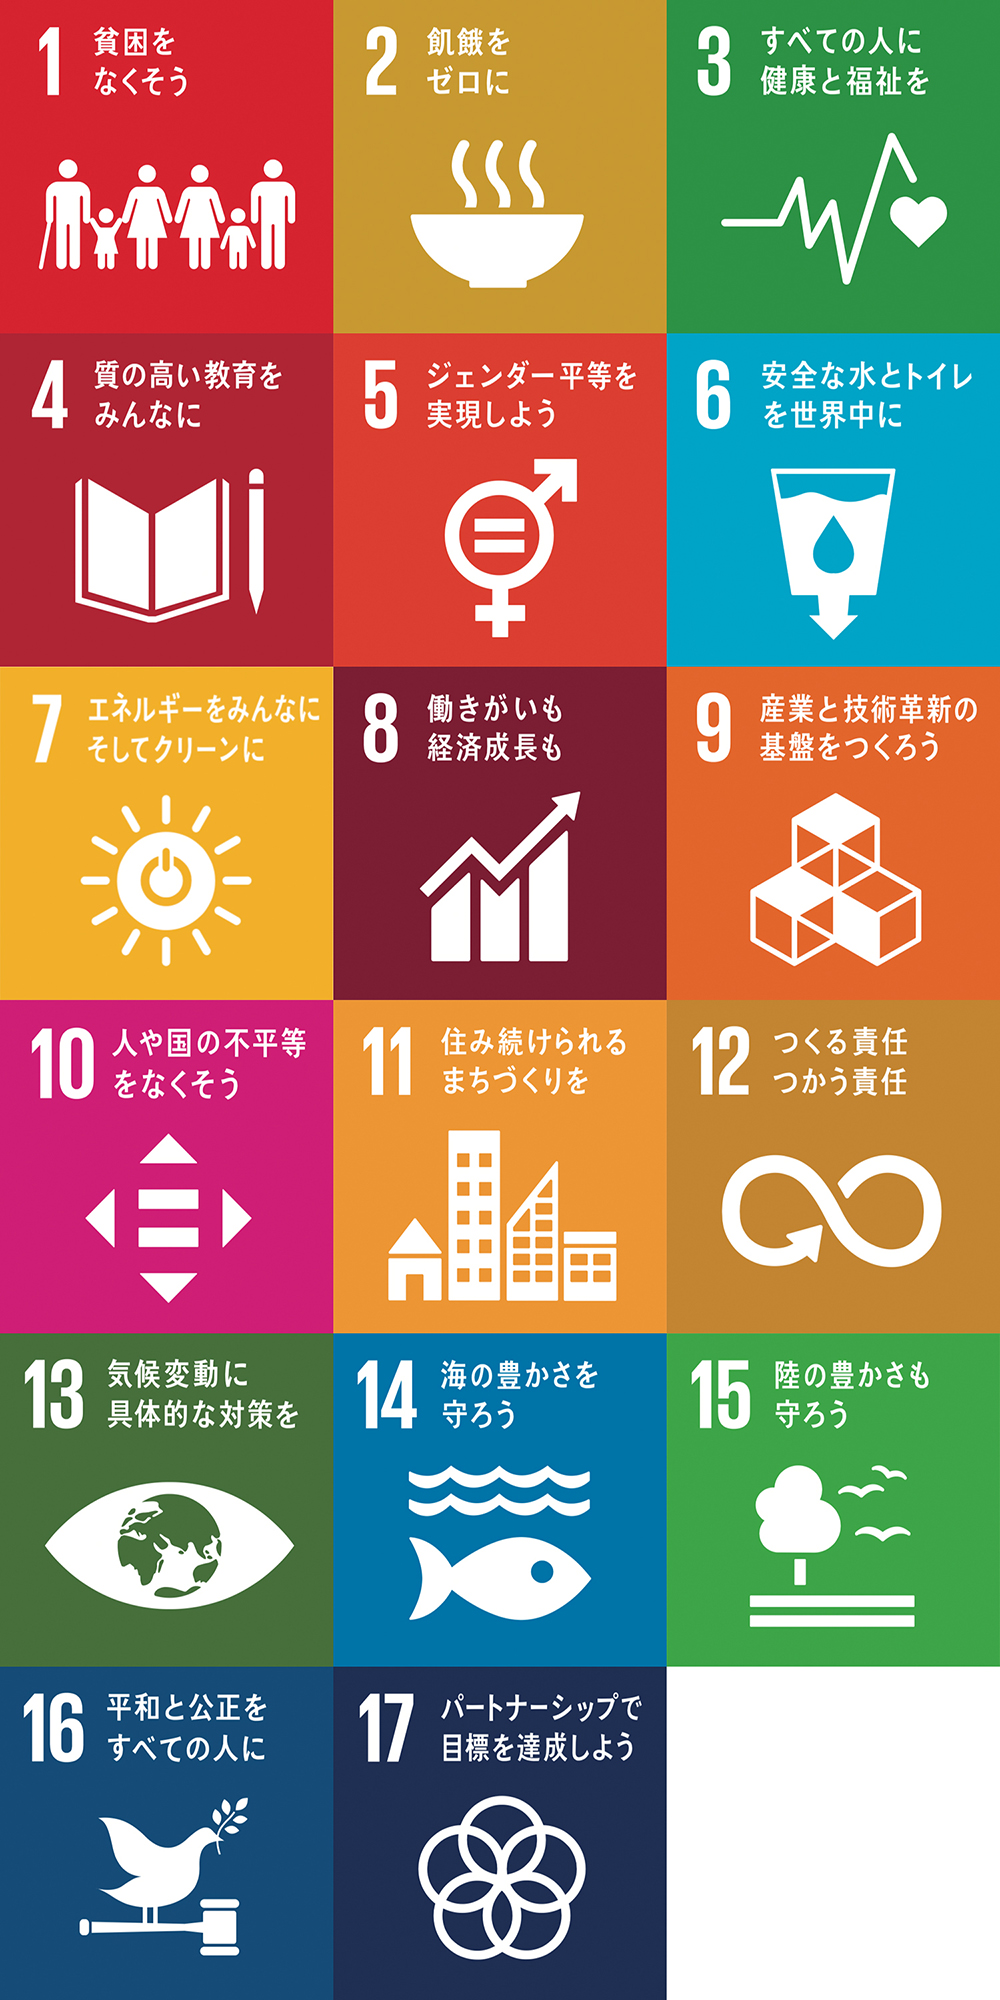 SDGs 持続可能な開発目標17個 1・貧困をなくそう 2・飢餓をゼロに 3・すべての人に健康と福祉を 4・質の高い教育をみんなに 5・ジェンダー平等を実現しよう 6・安全な水とトイレを世界中に 7・エネルギーをみんなにそしてクリーンに 8・働きがいも経済成長も 9・産業と技術革新の基盤をつくろう 10・人や国の不平等をなくそう 11・住み続けられるまちづくりを 12・つくる責任つかう責任 13・気候変動に具体的な対策を 14・海の豊かさを守ろう 15・陸の豊かさも守ろう 16・平和と公正をすべての人に 17・パートナーシップで目標を達成しよう